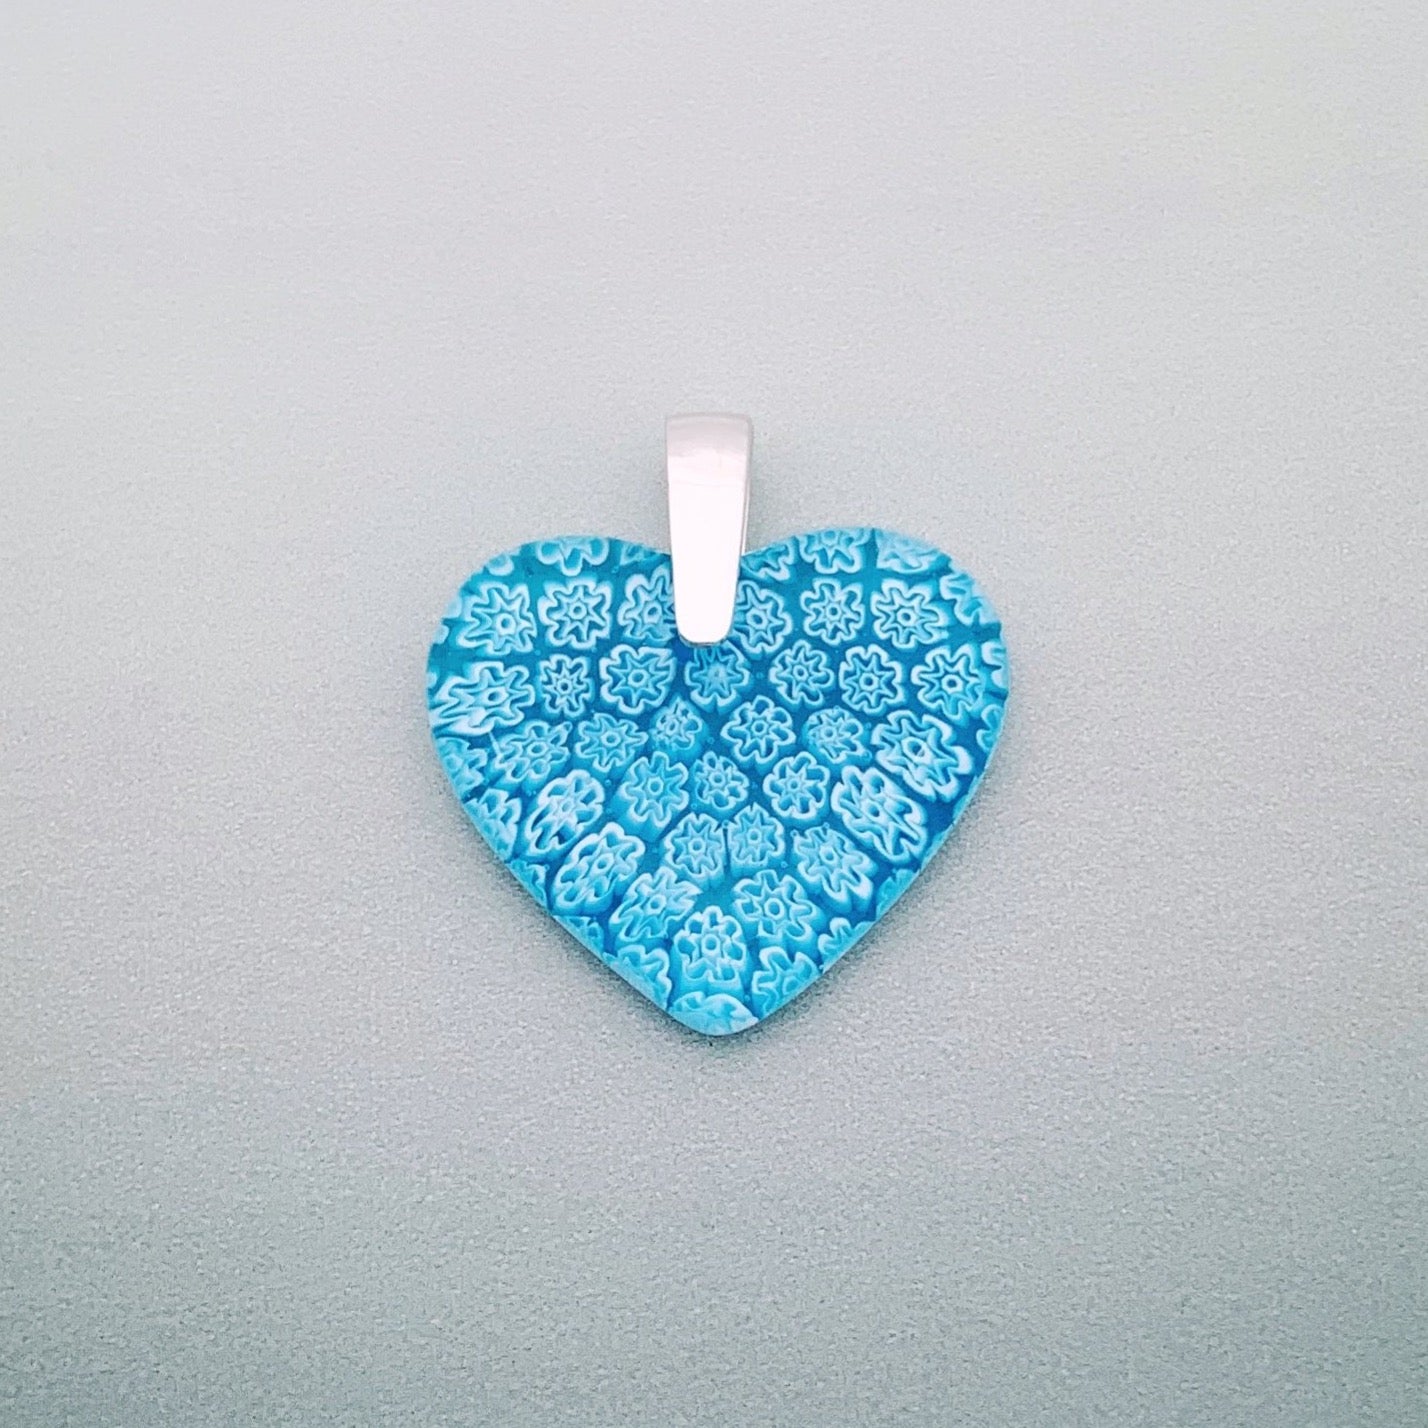 Fused millefiori glass small heart pendant in turquoise fleurette